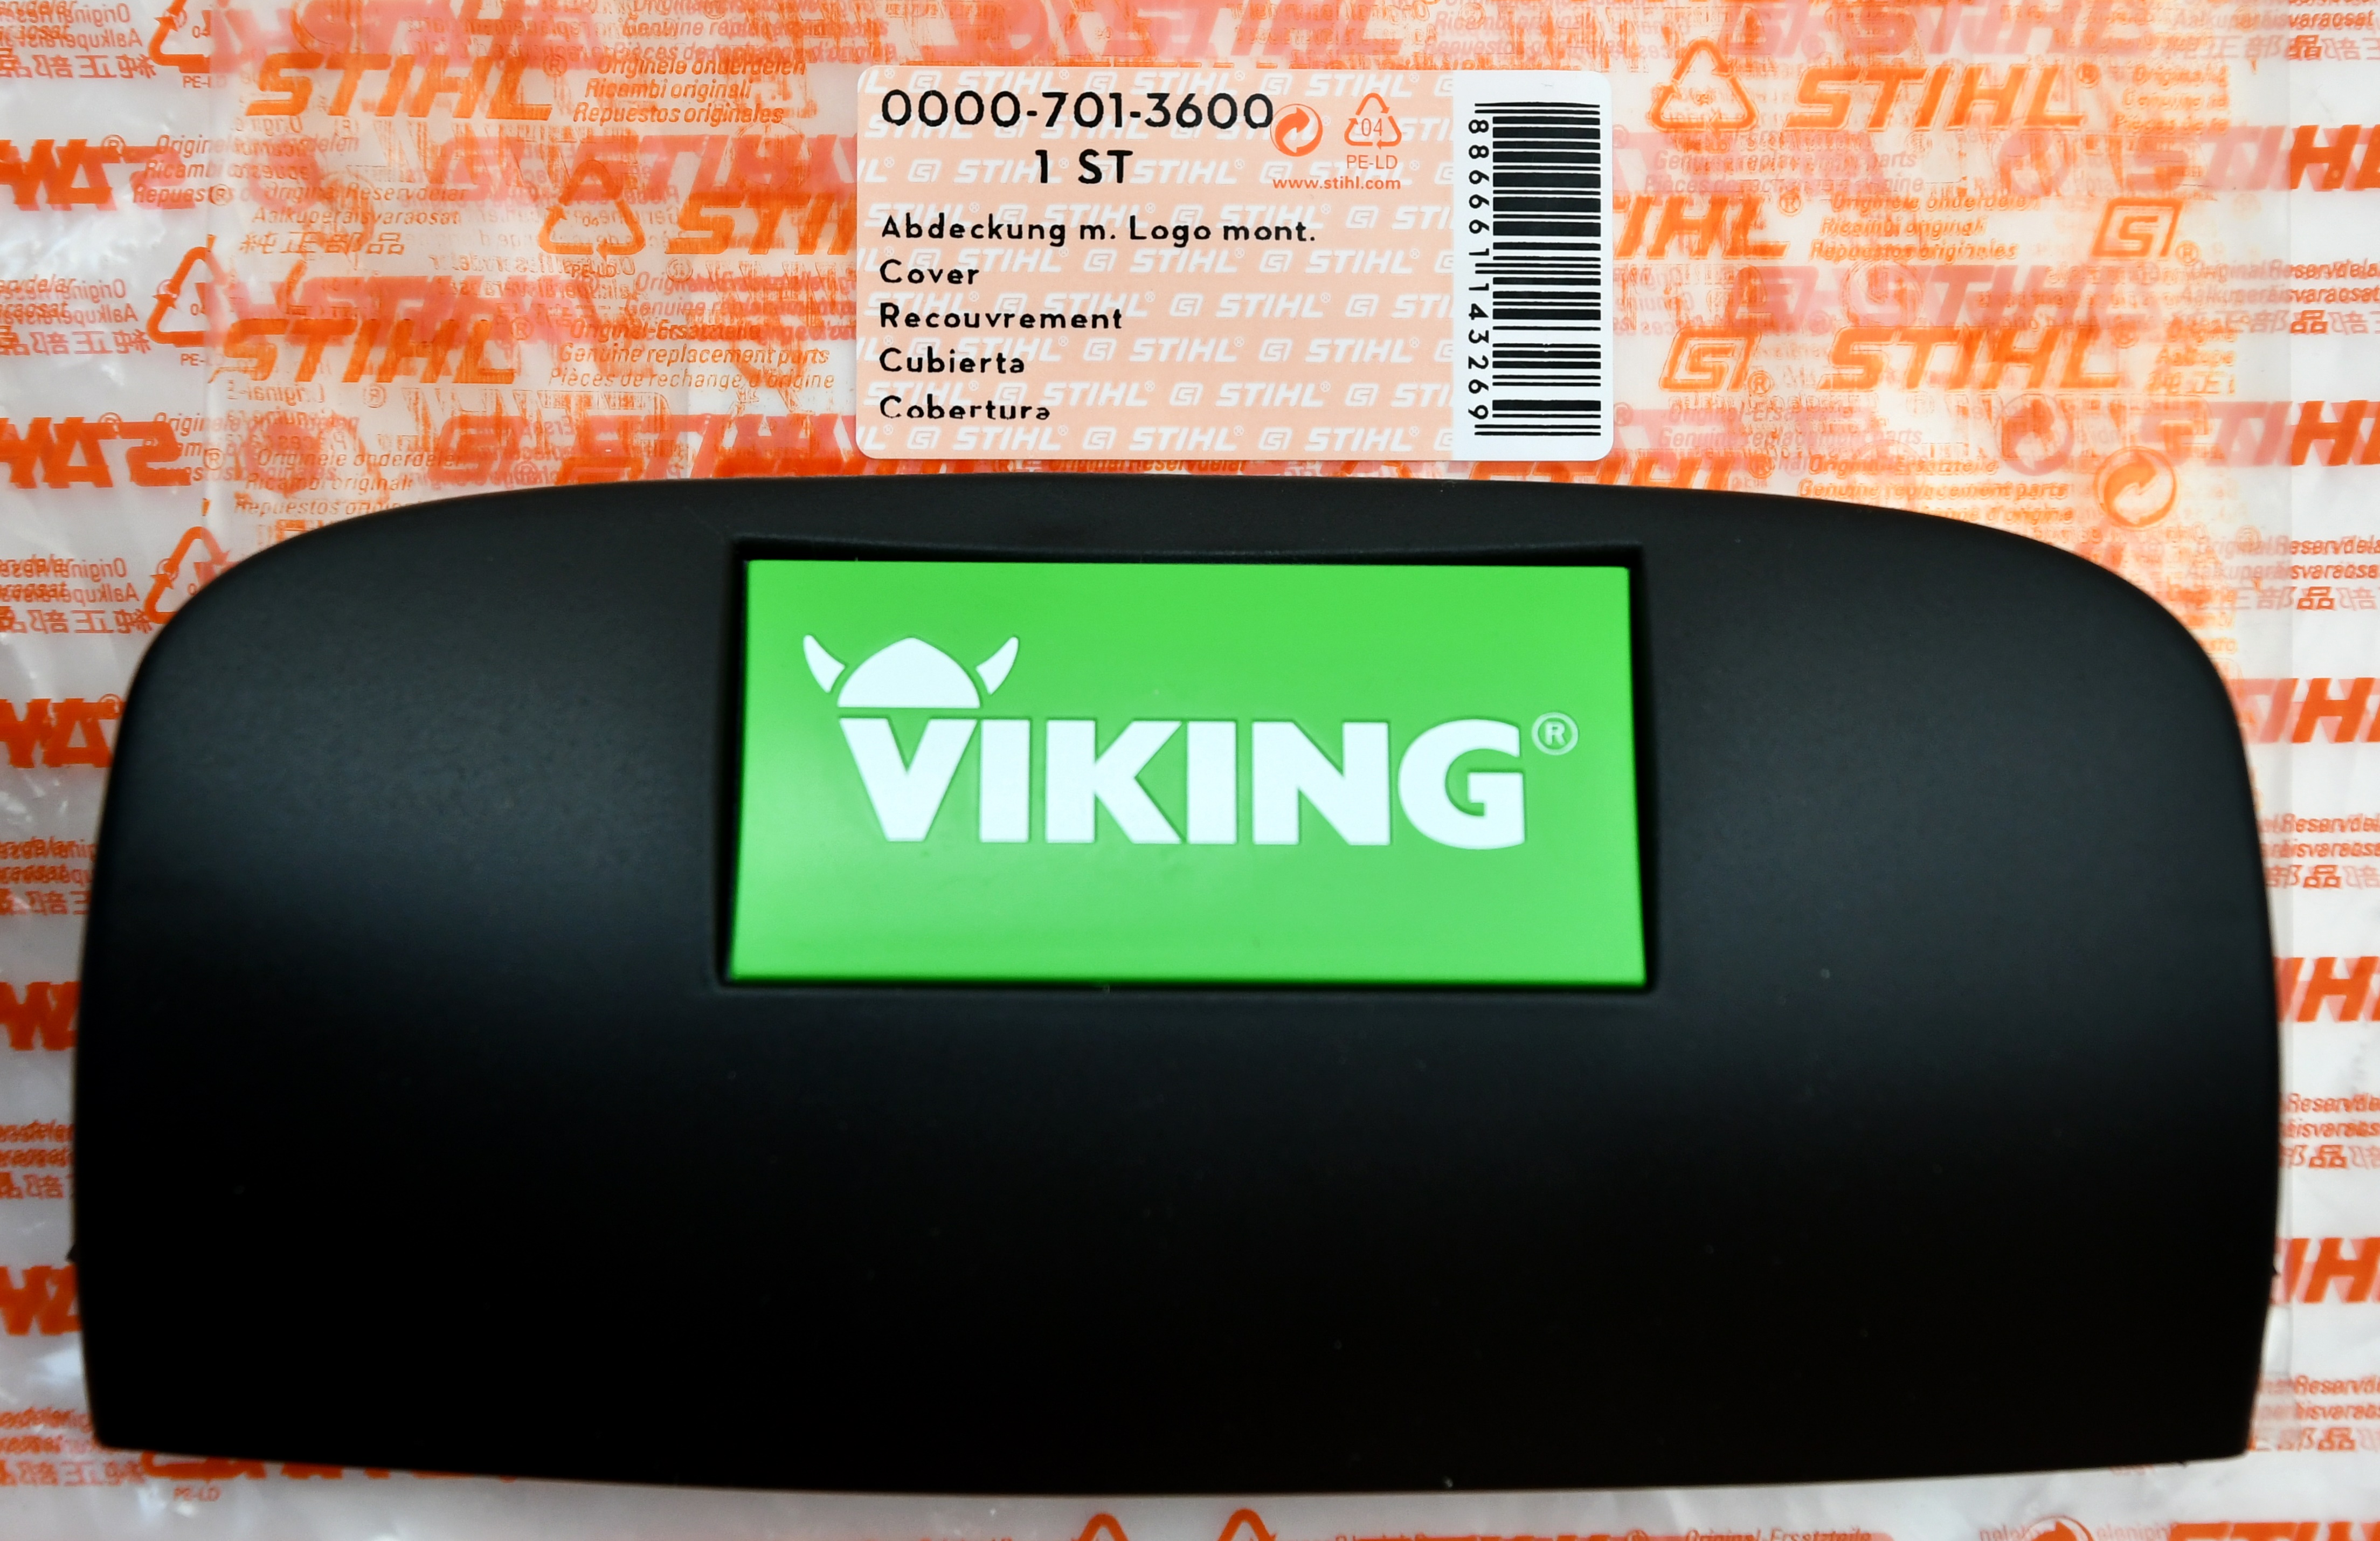 Stihl Viking  00007013600 Abdeckung mit Logo Typenschild für MB 545